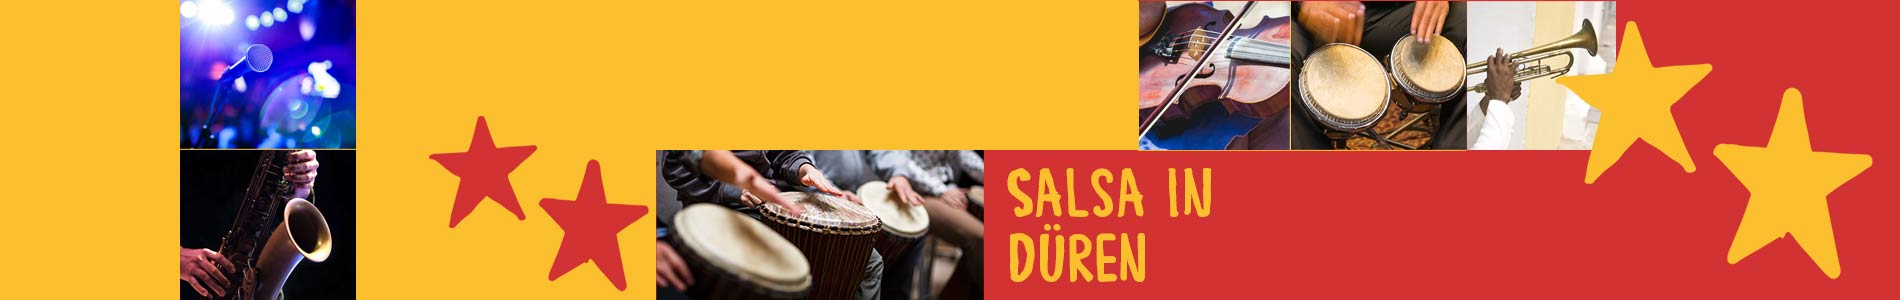 Salsa in Düren – Salsa lernen und tanzen, Tanzkurse, Partys, Veranstaltungen